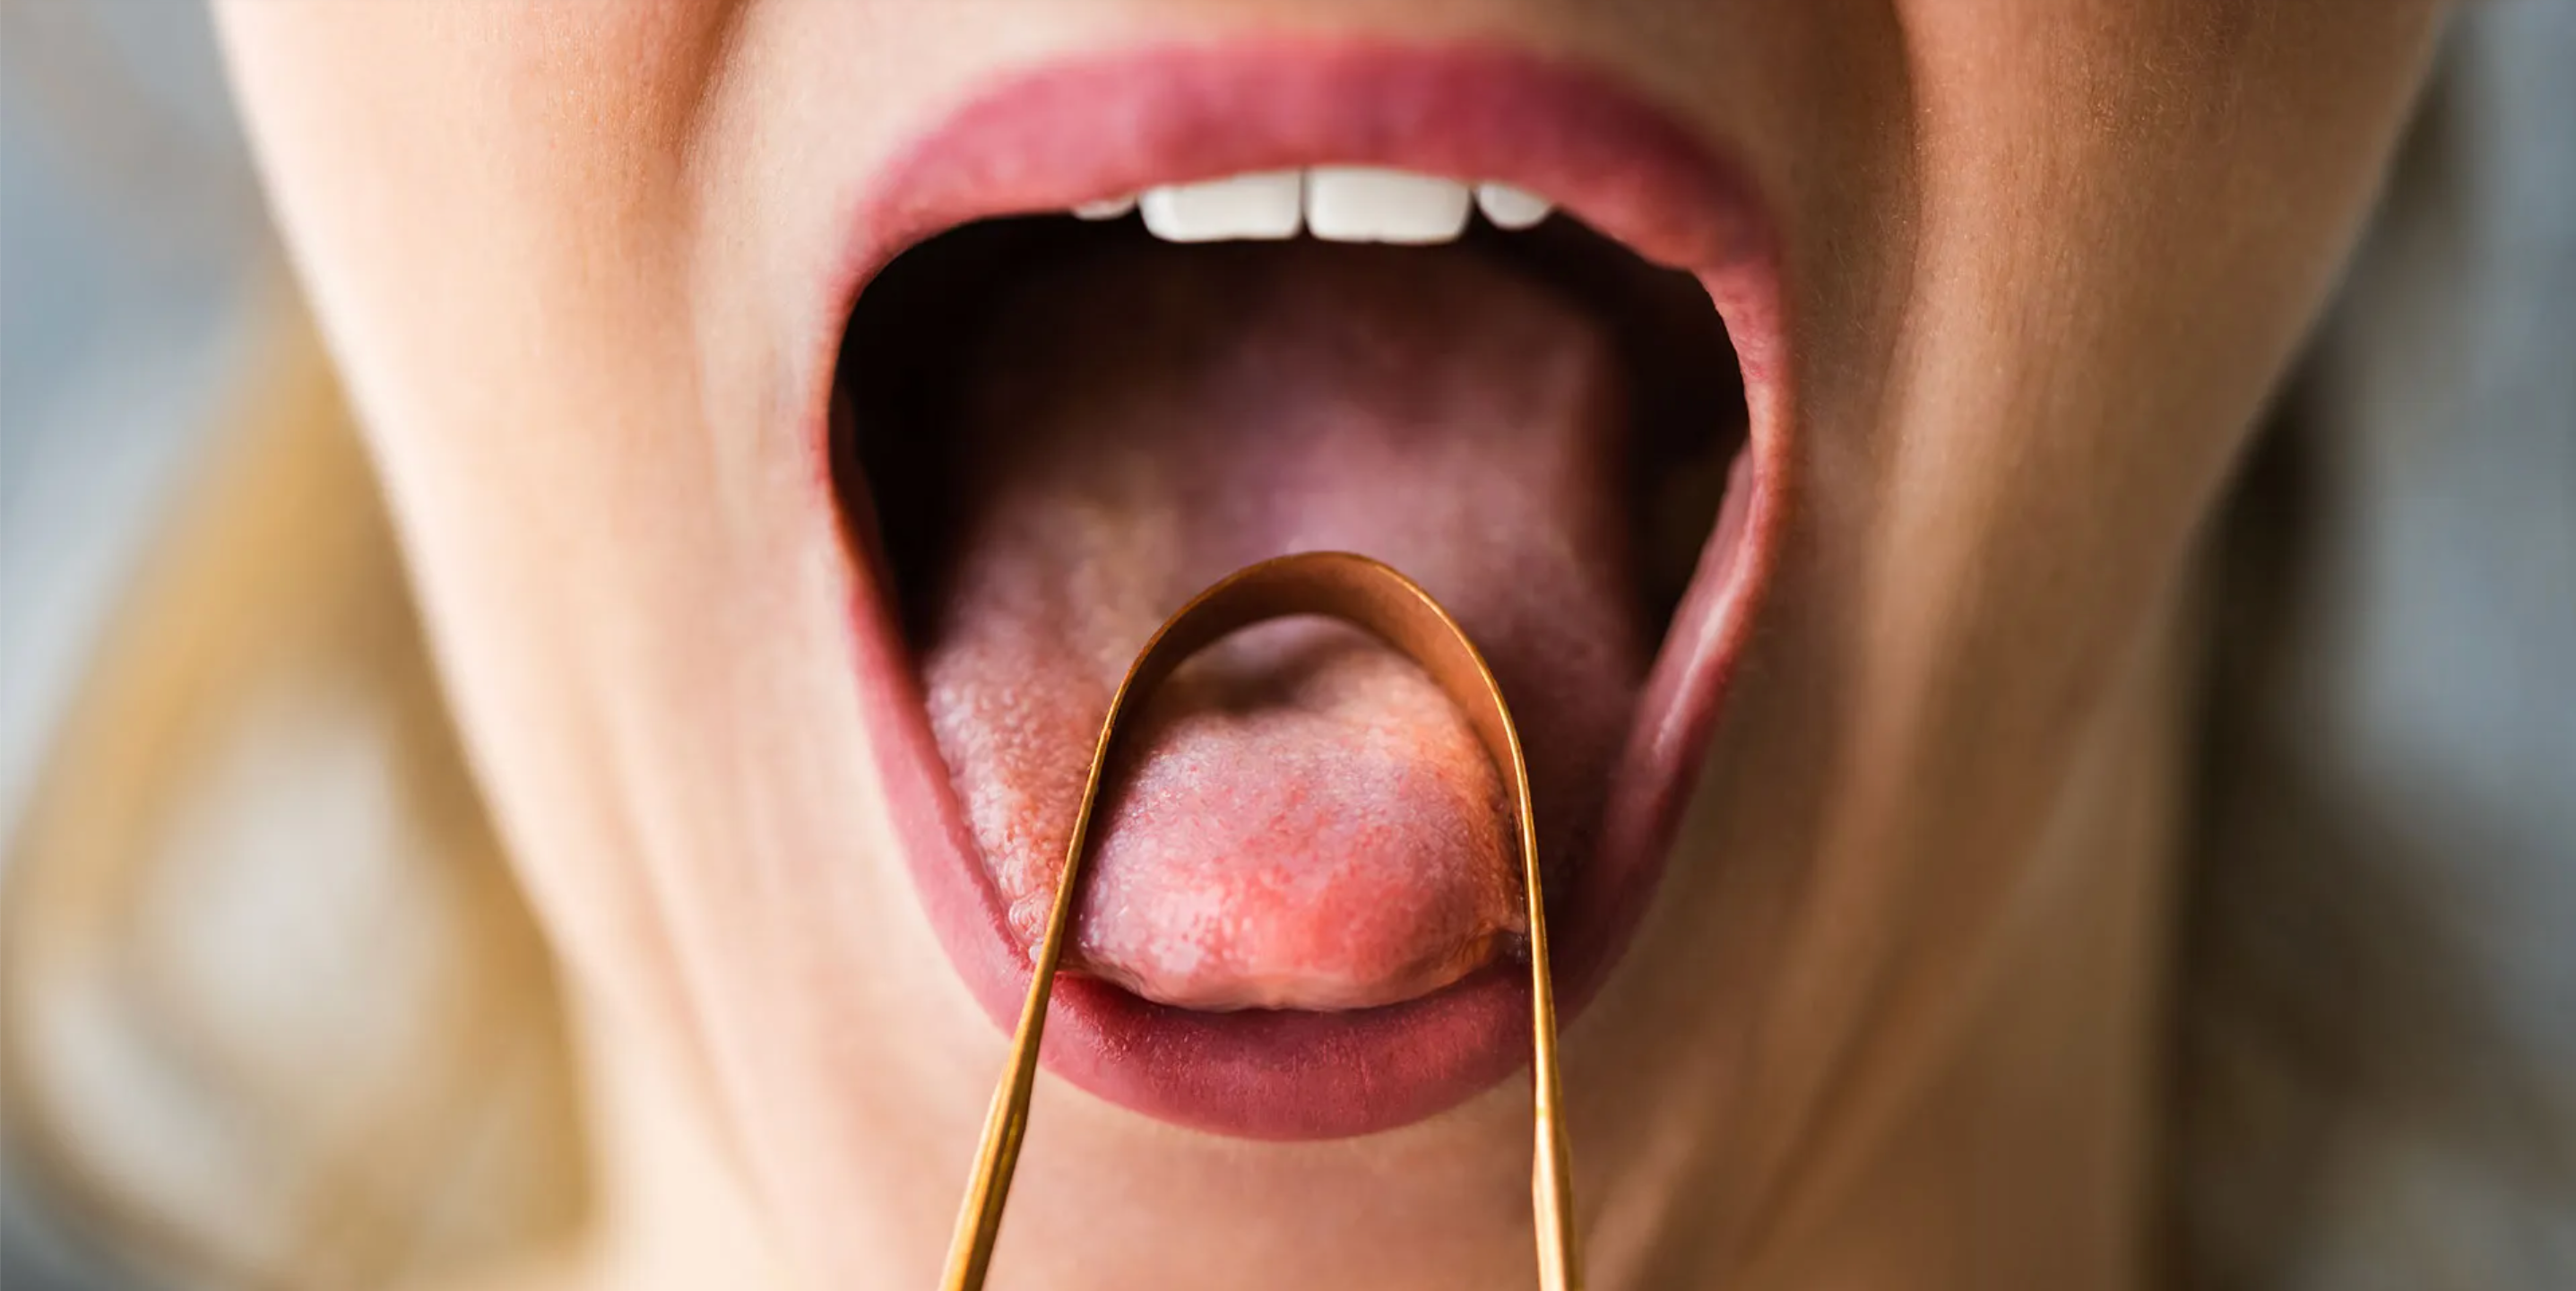 Tongue Scraper